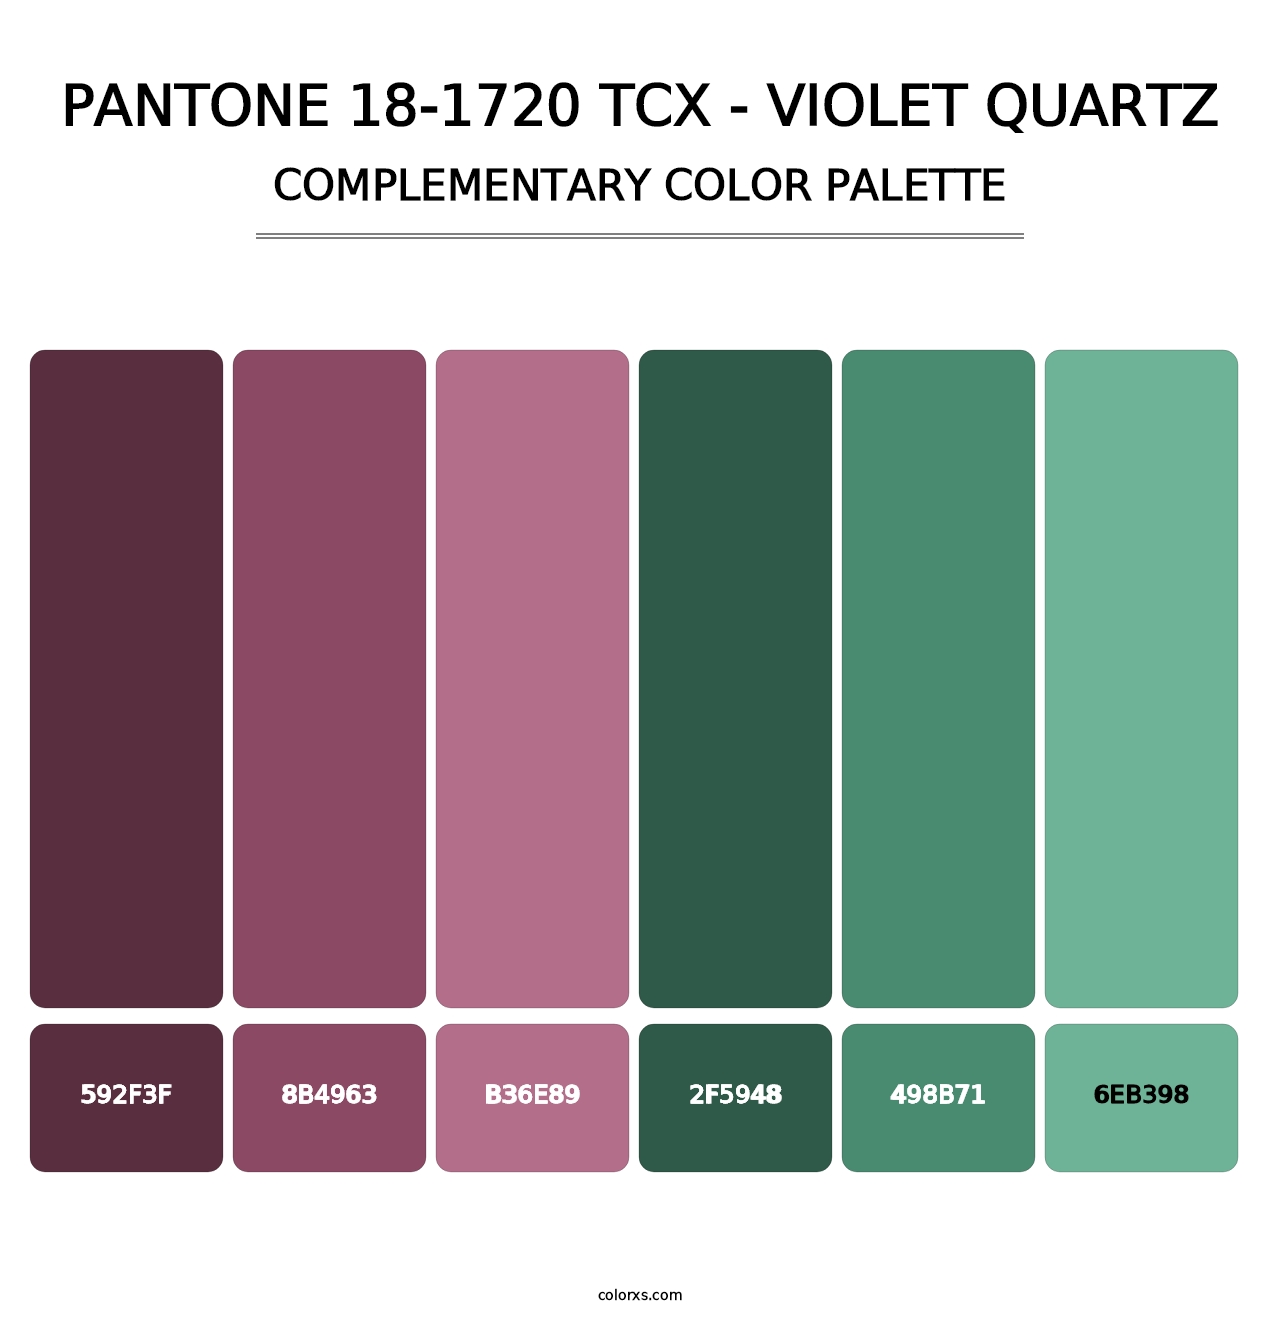 PANTONE 18-1720 TCX - Violet Quartz - Complementary Color Palette